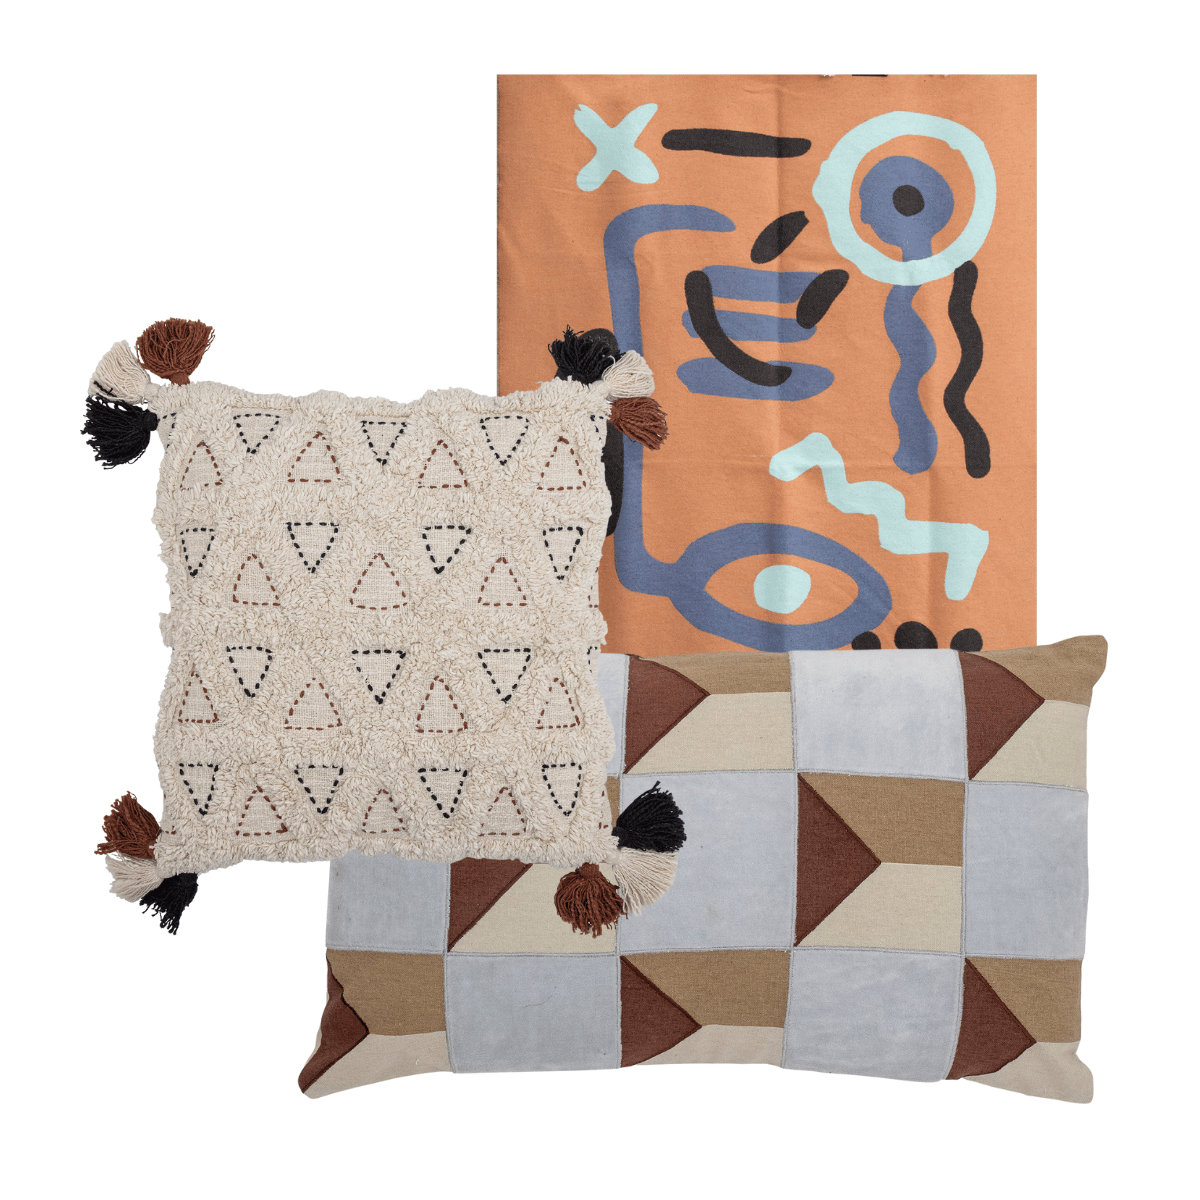 3er Set 'Vibe' – Stilvolle Textilien, die Kunst und Komfort meisterhaft kombinieren.